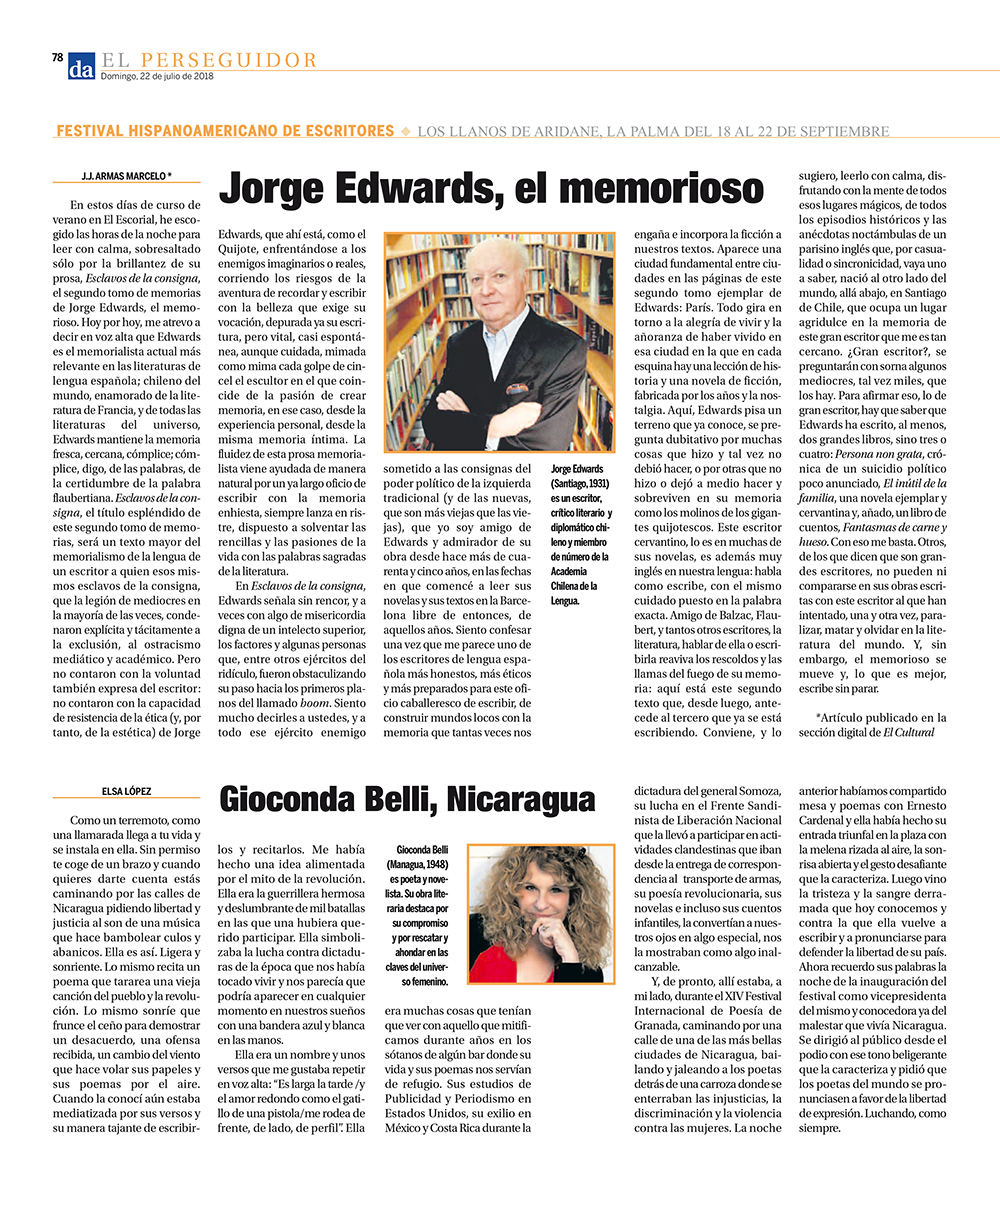 22/07/2018_El Perseguidor_Diario de Avisos